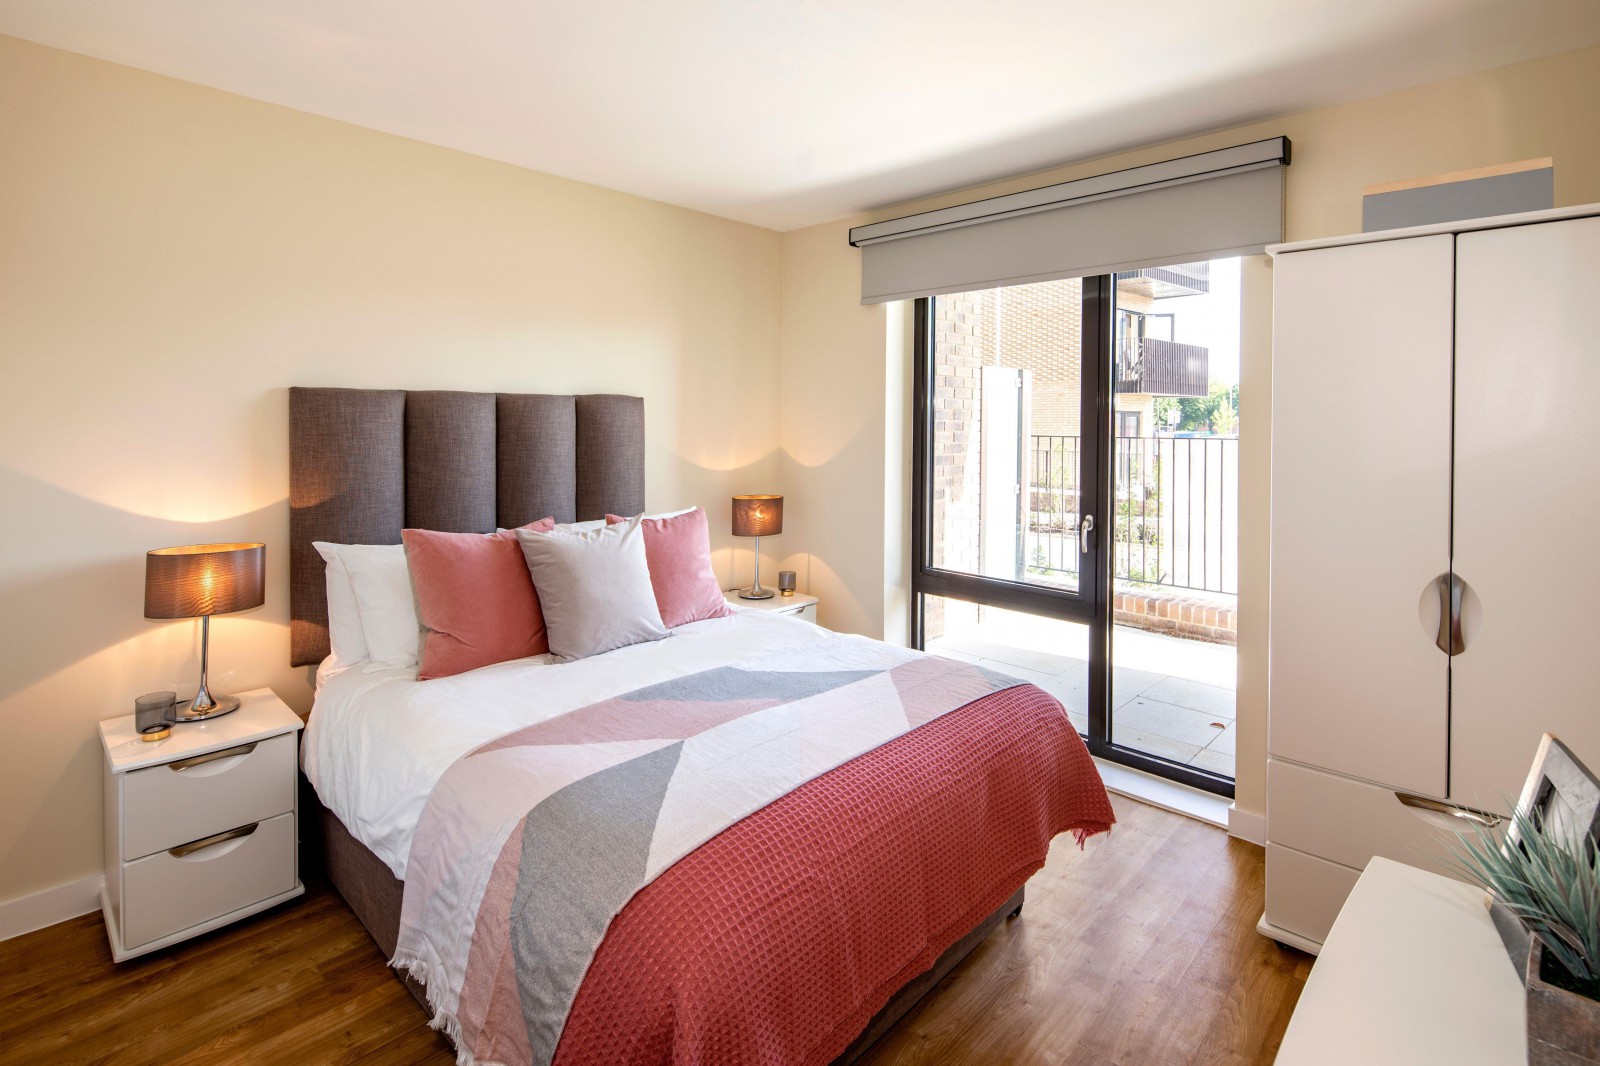 1 Bedroom Flat To Rent In Hillingdon Road Uxbridge Ub10